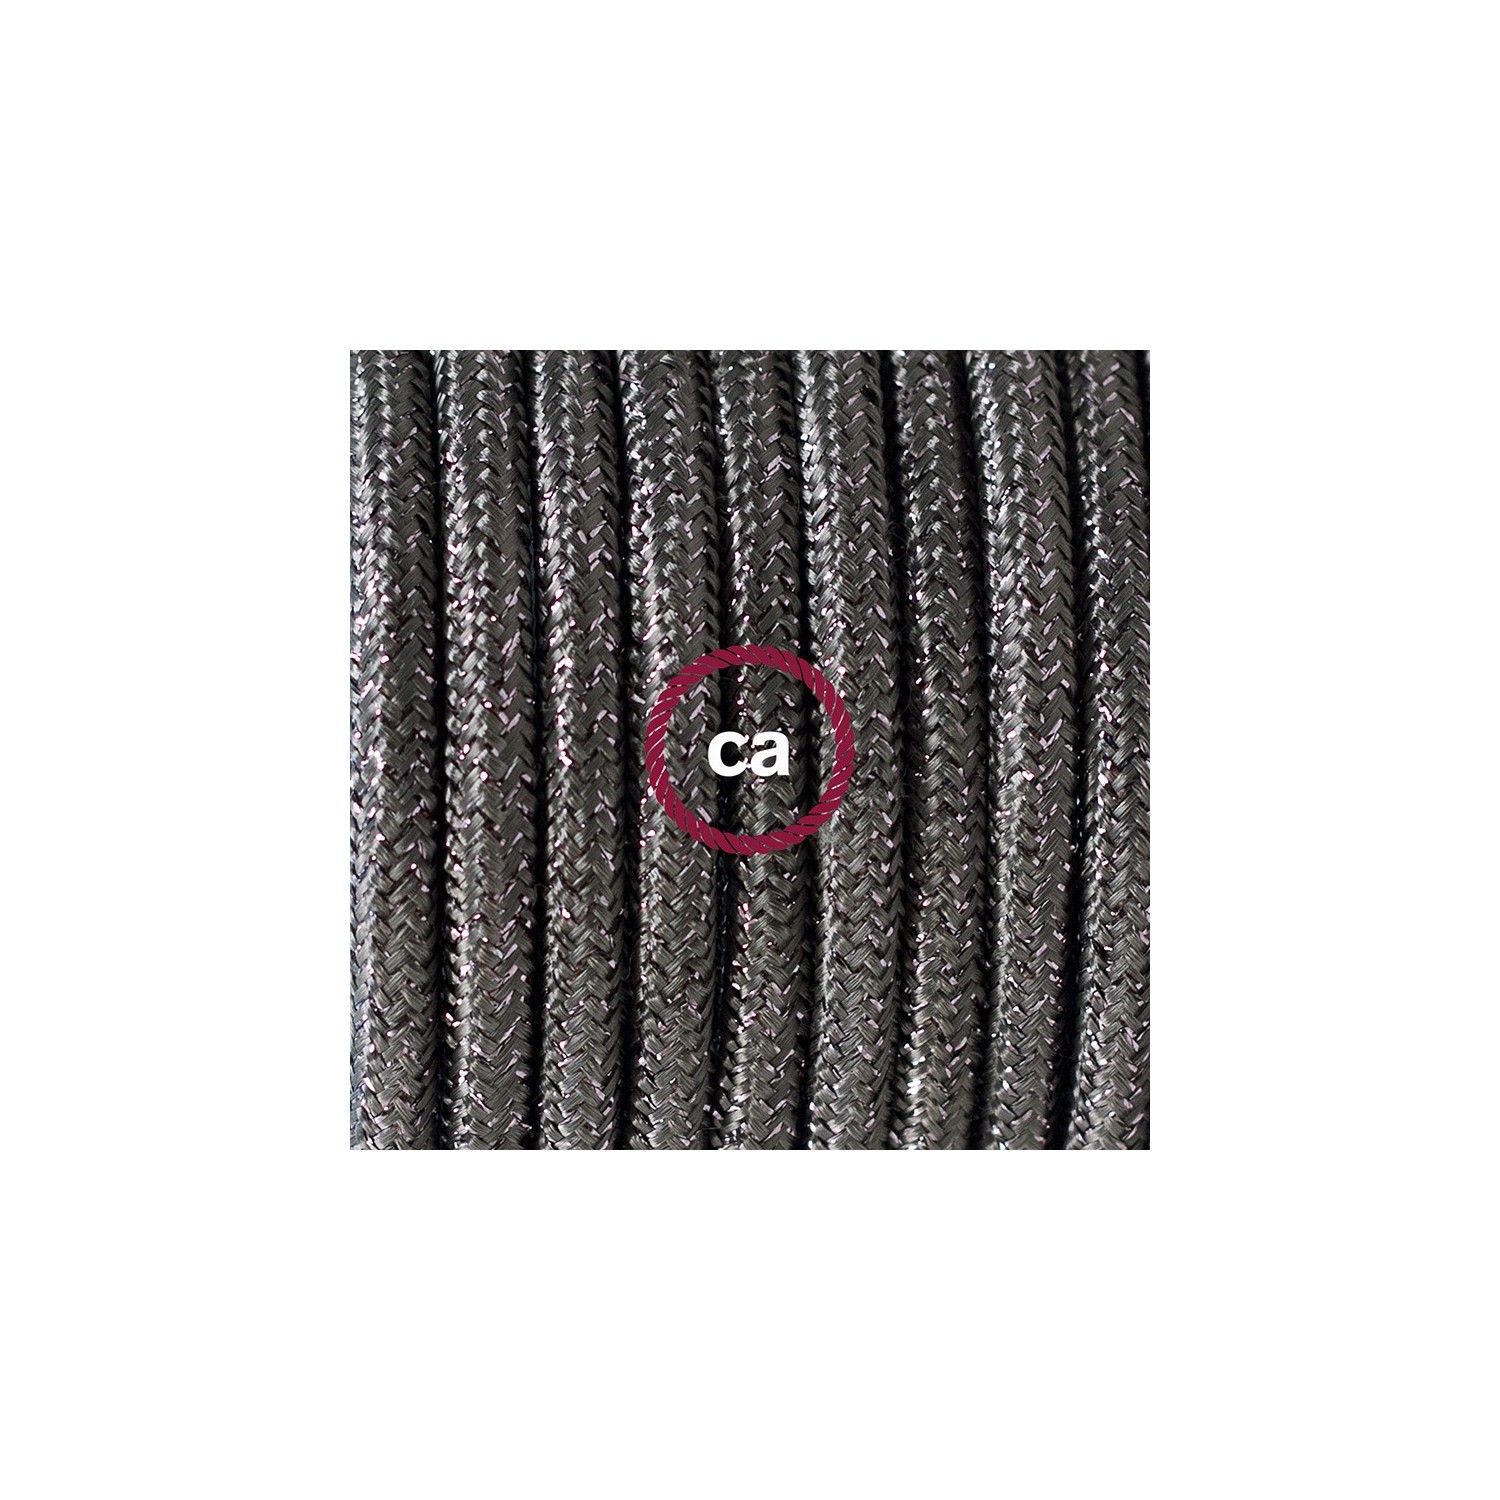 Ronde flexibele textielkabel van viscose met schakelaar en stekker. RL03 -lame (glinsterend) grijs 1,80 m.